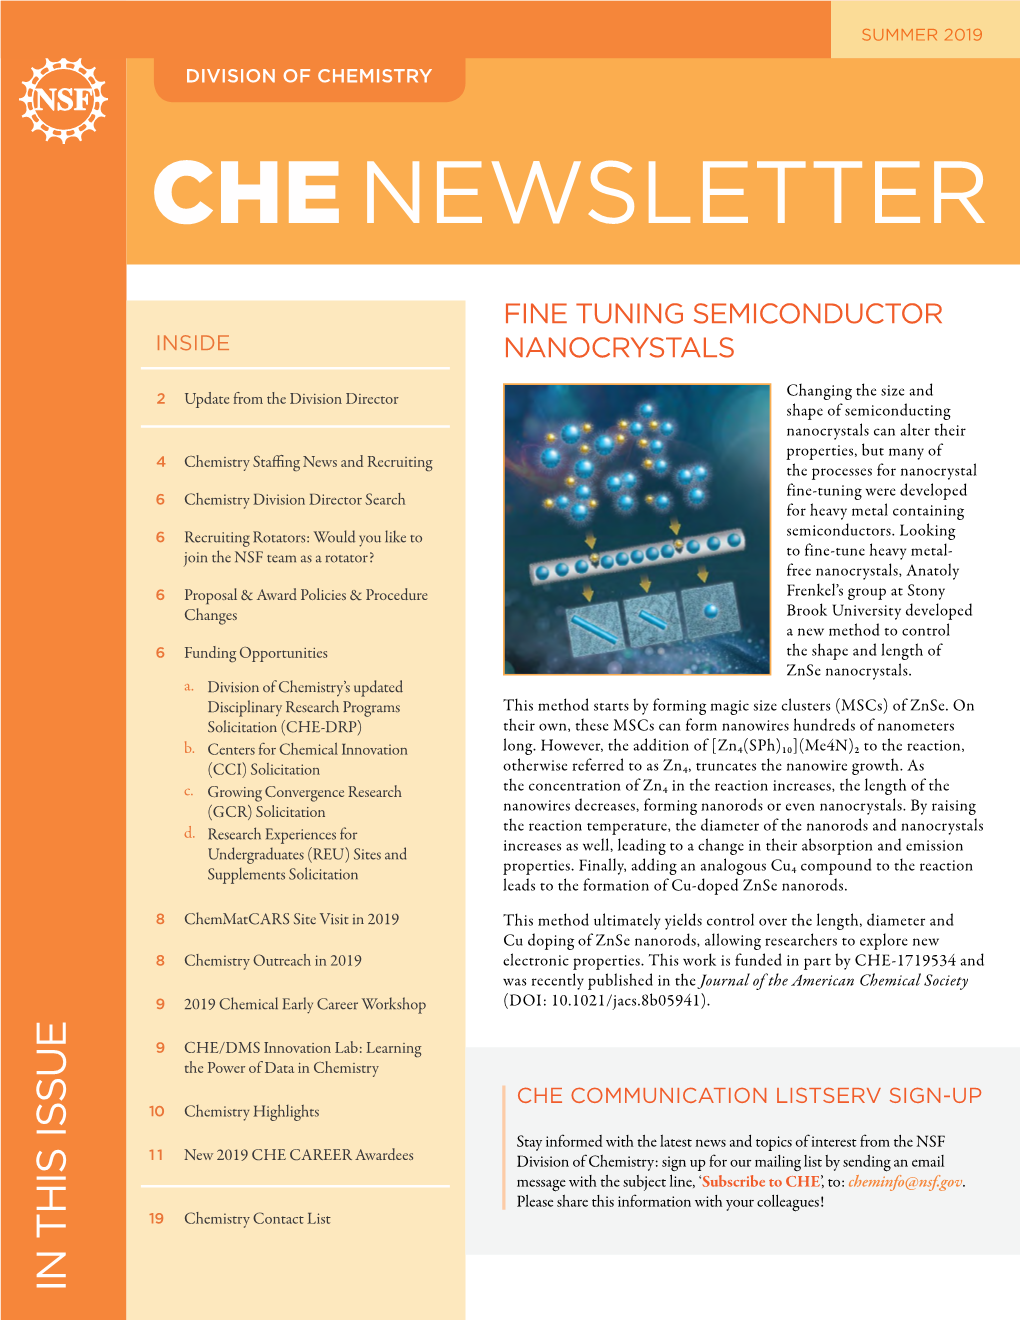 (CHE) Newsletter